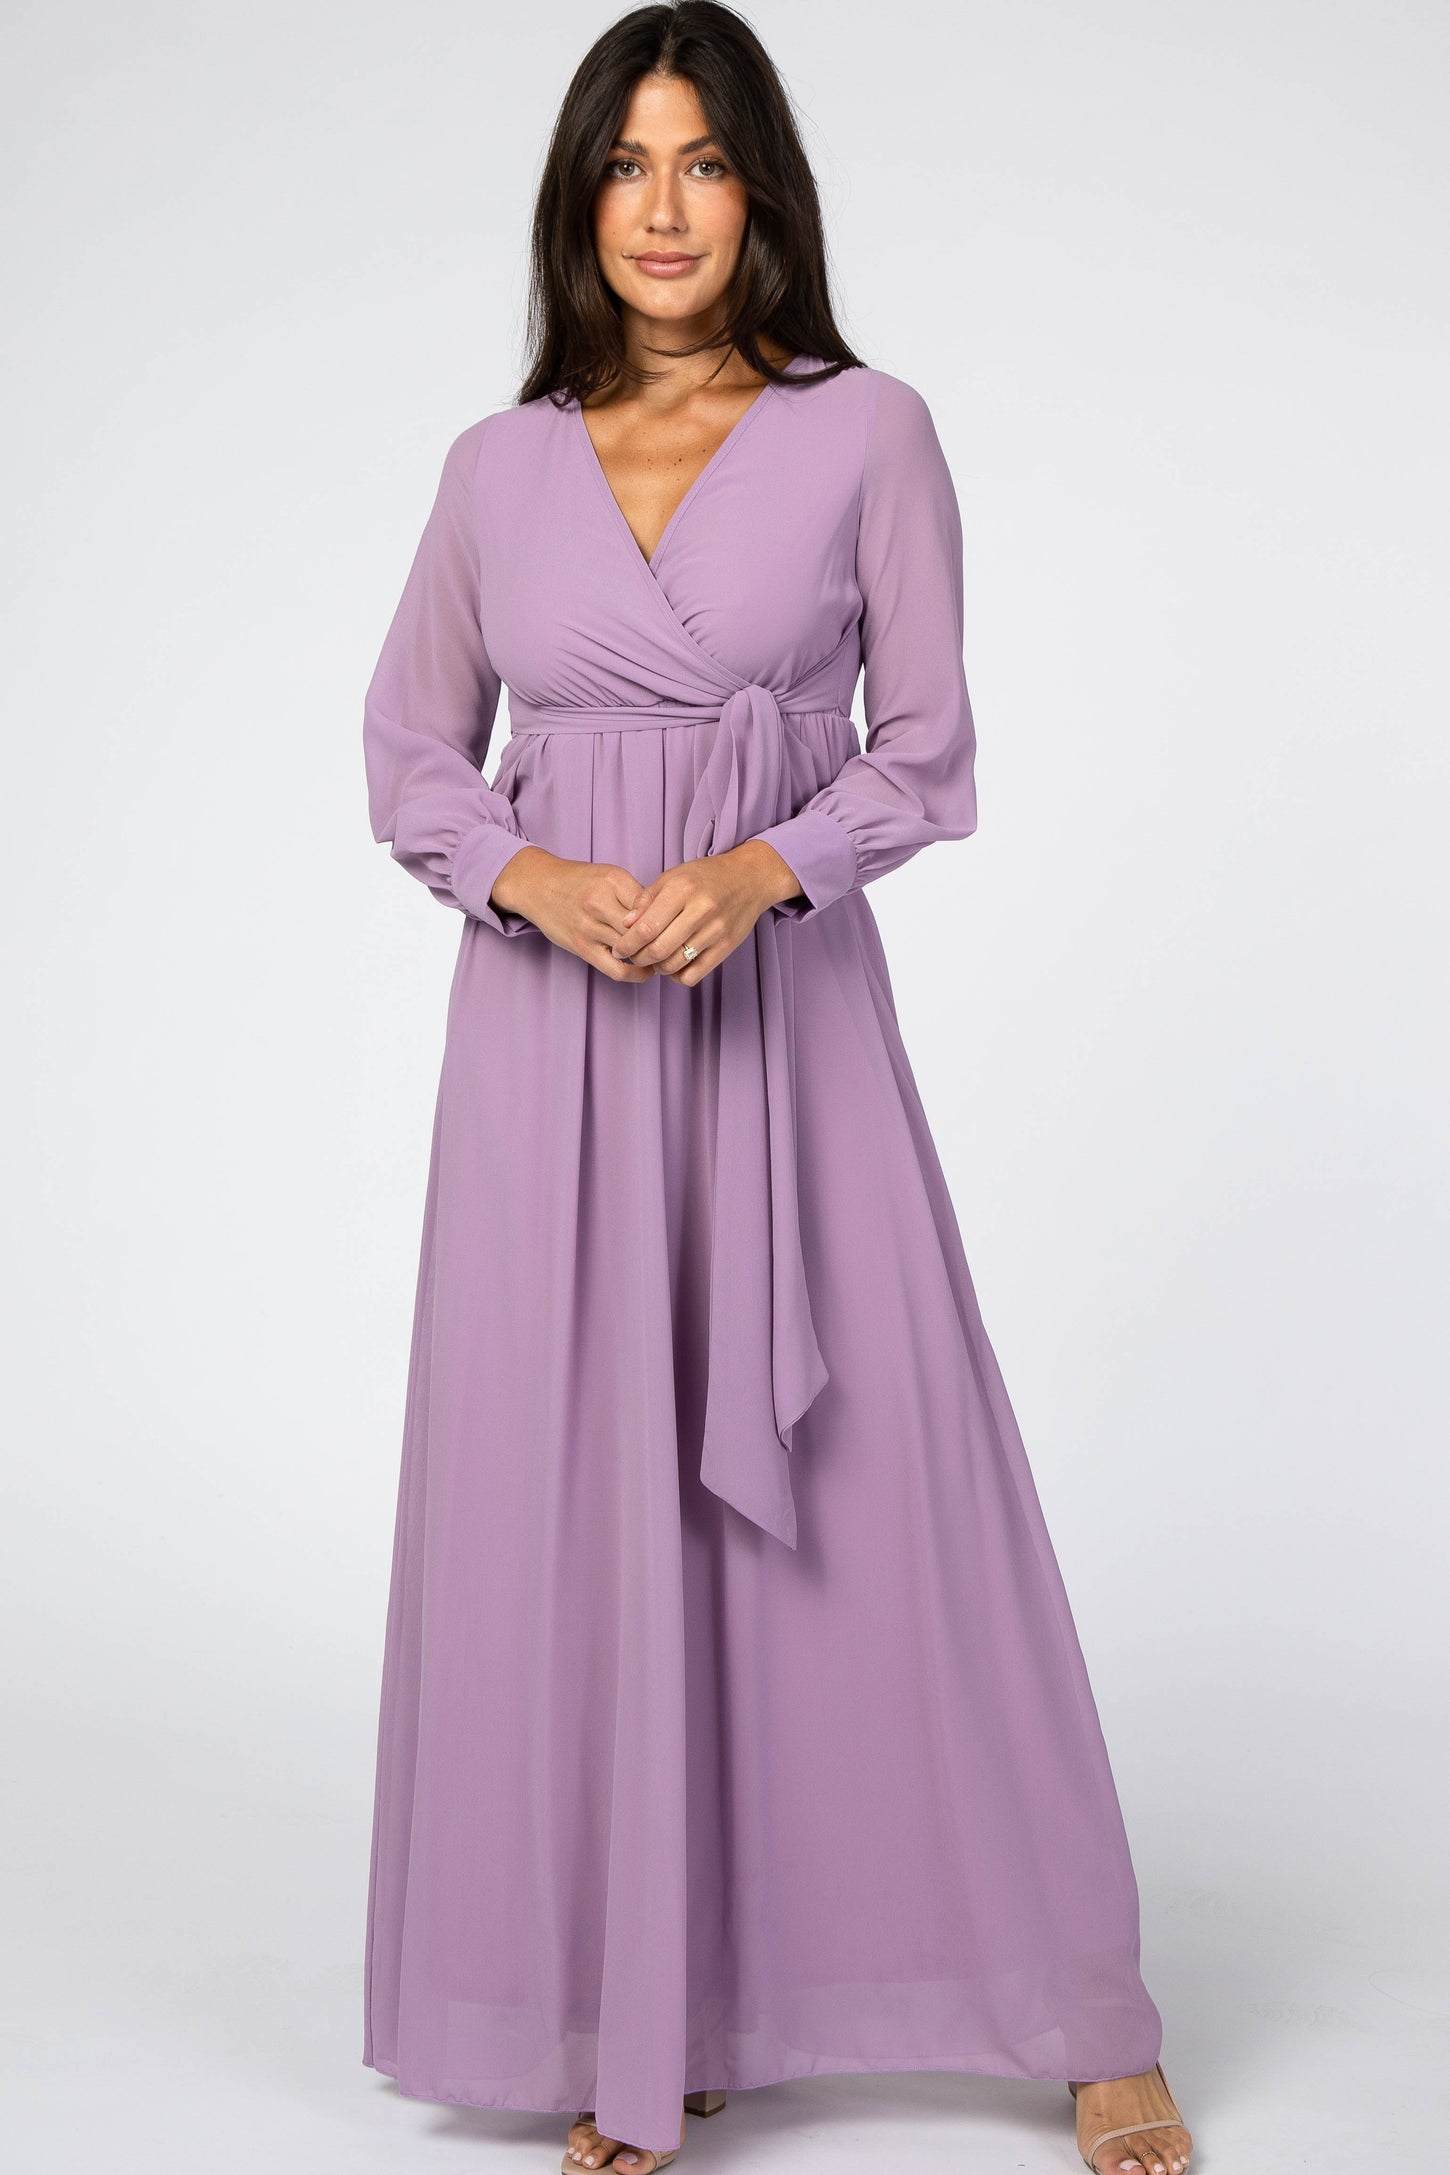 Violet Chiffon Long Sleeve Pleated Maternity Maxi Dress– PinkBlush